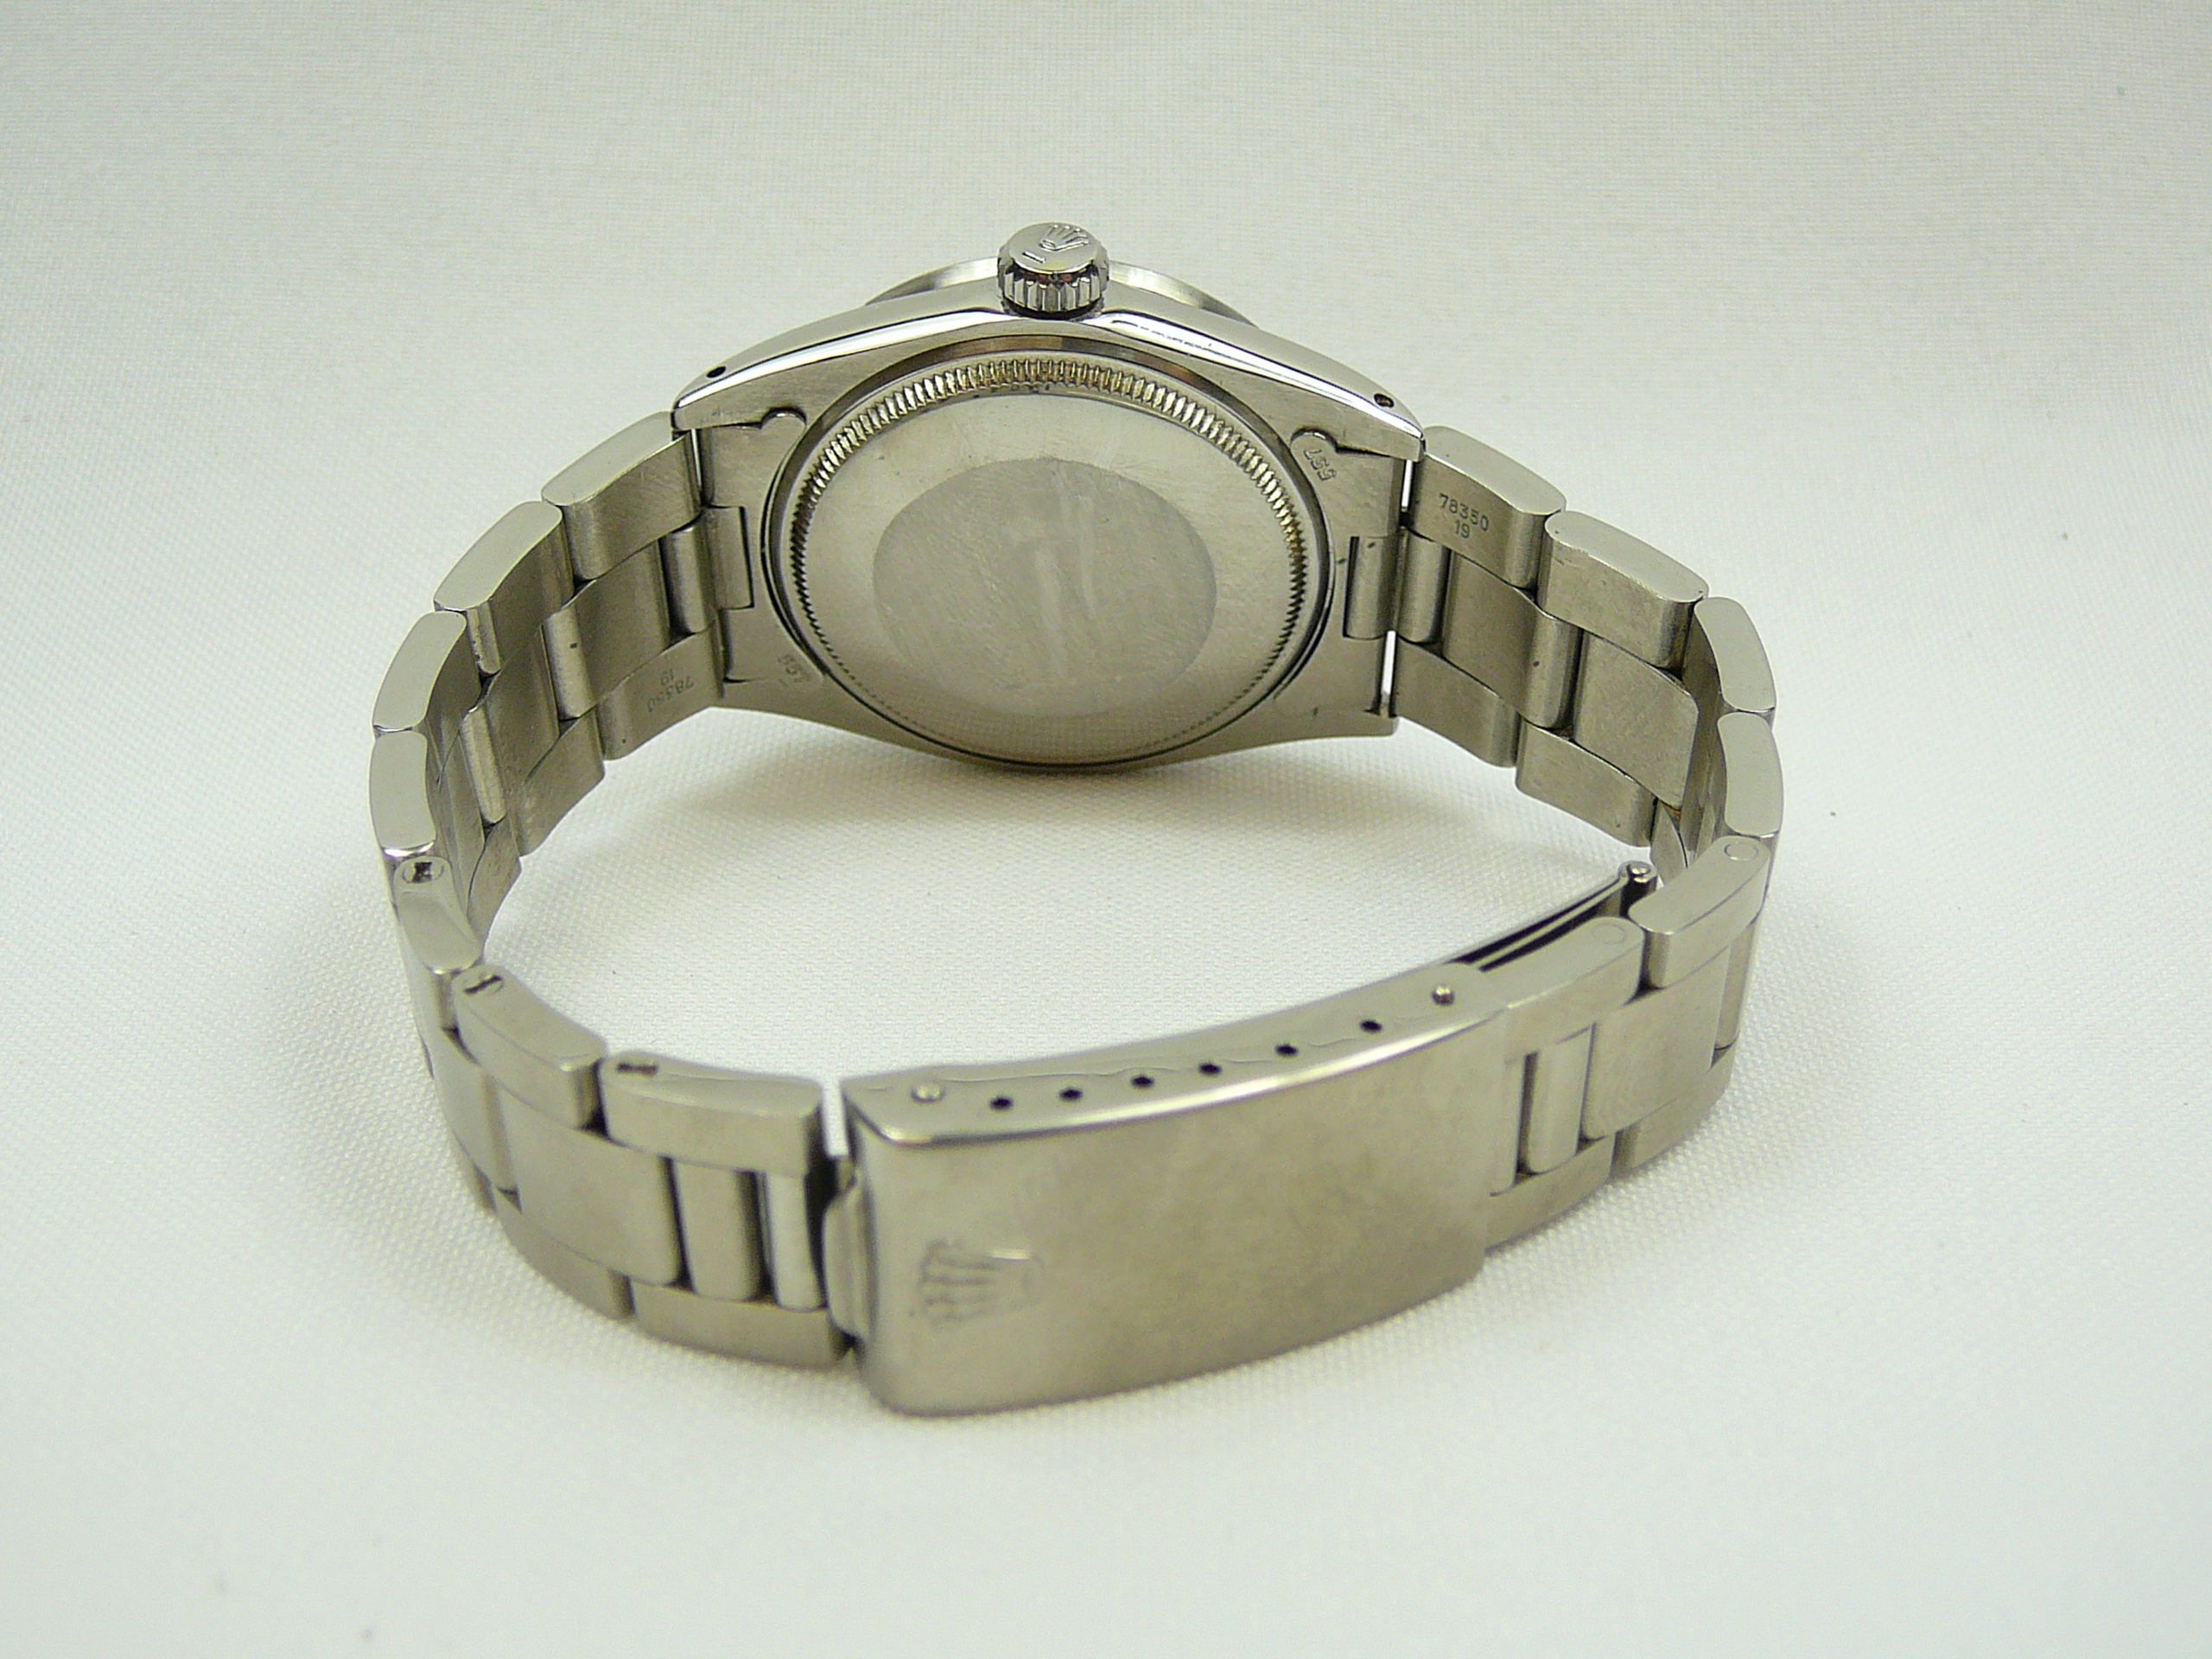 Gents Rolex Wrist Watch - Image 4 of 6